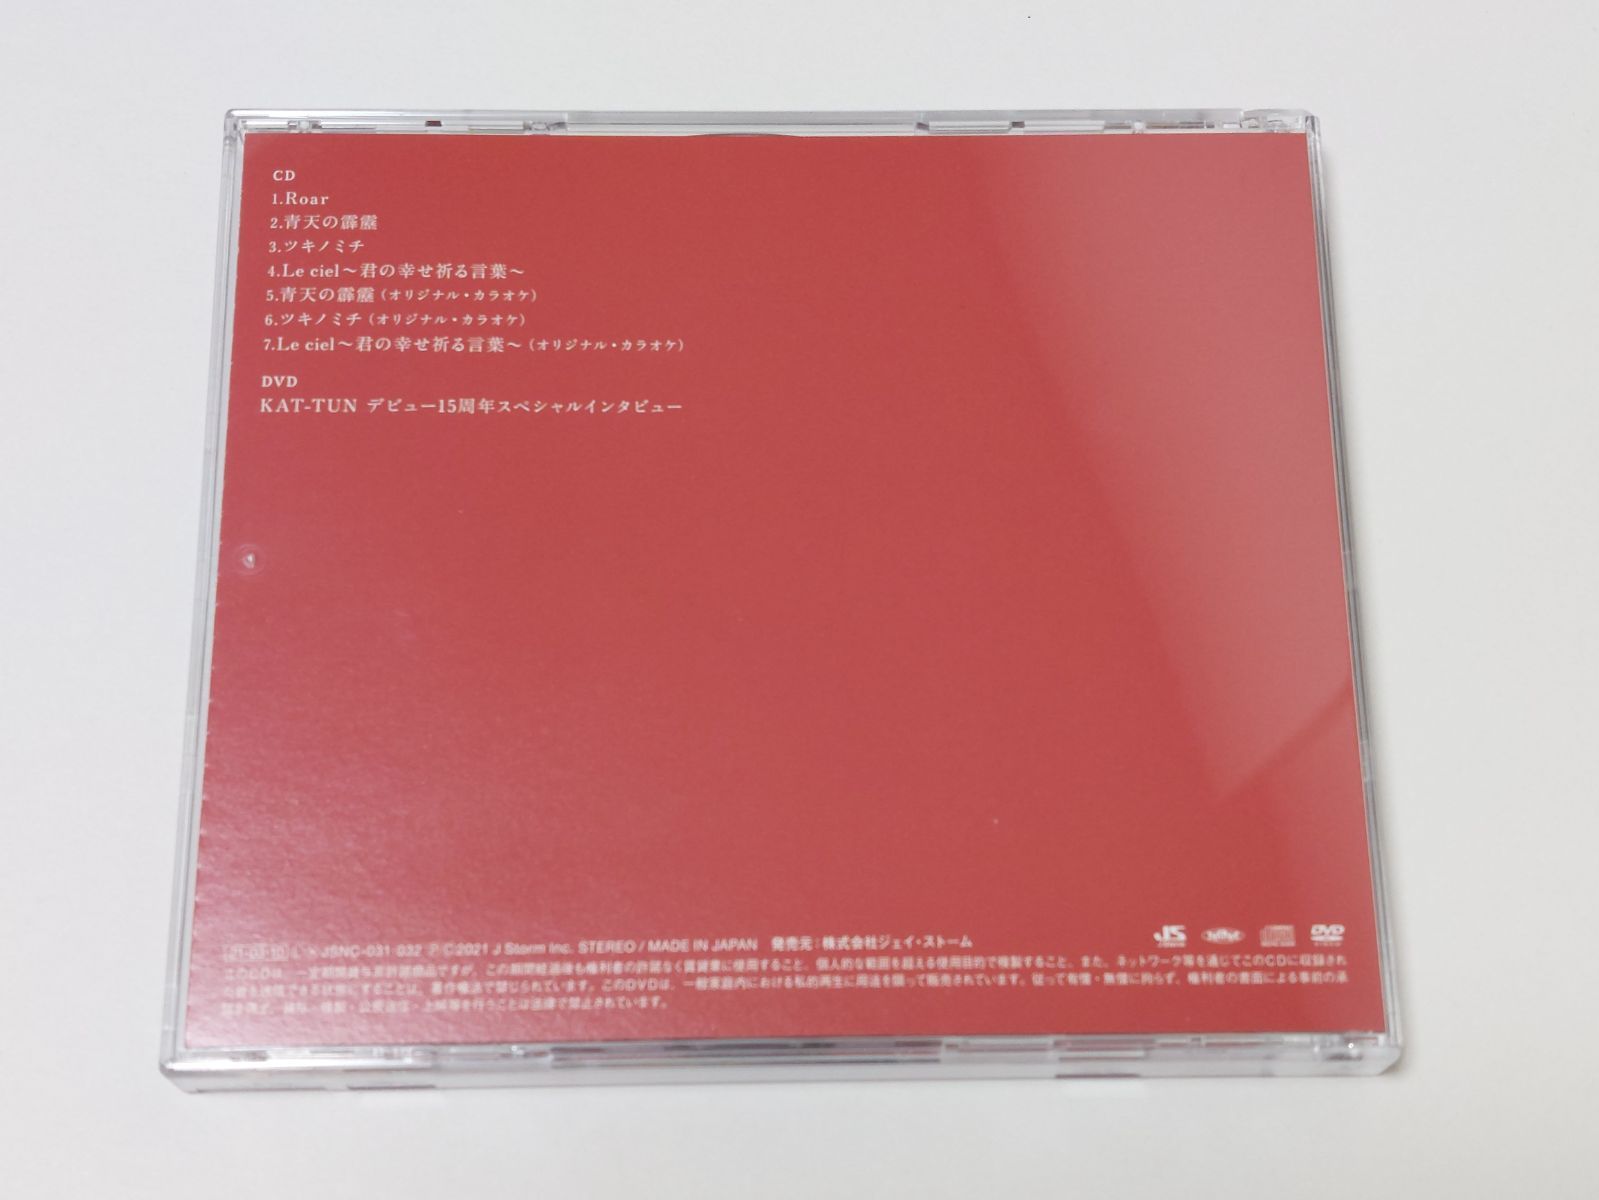 KAT-TUN『Roar』ファンクラブ会員限定盤 CD+DVD - Lotus - メルカリ